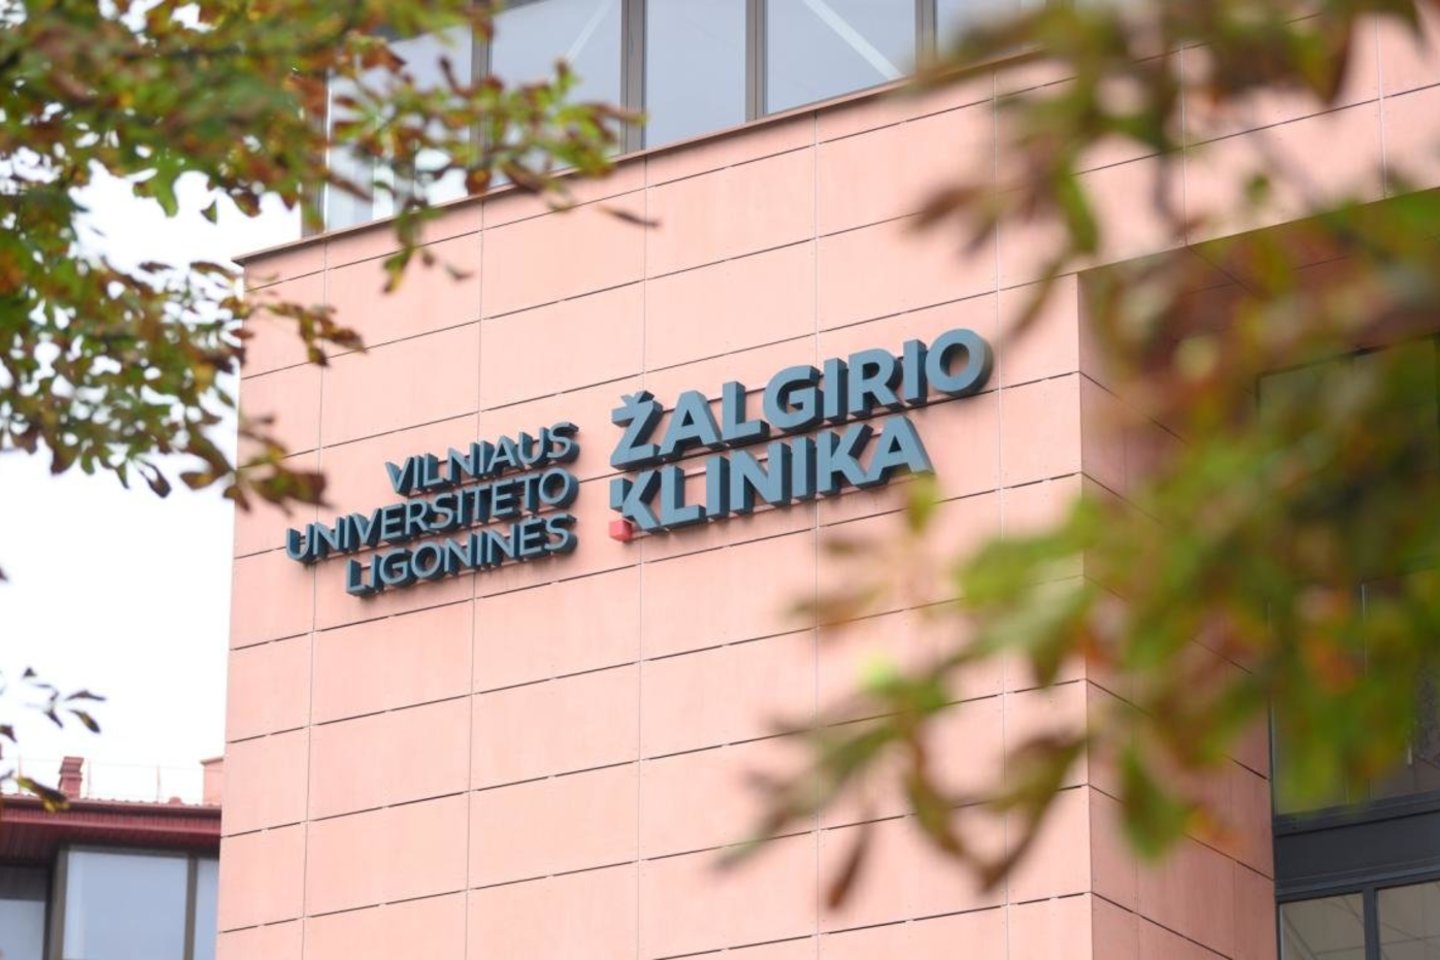  Vilniaus universiteto ligoninės Žalgirio klinikos medikai daug kartų buvo kviečiami į apklausas.<br> V.Skaraičio nuotr.